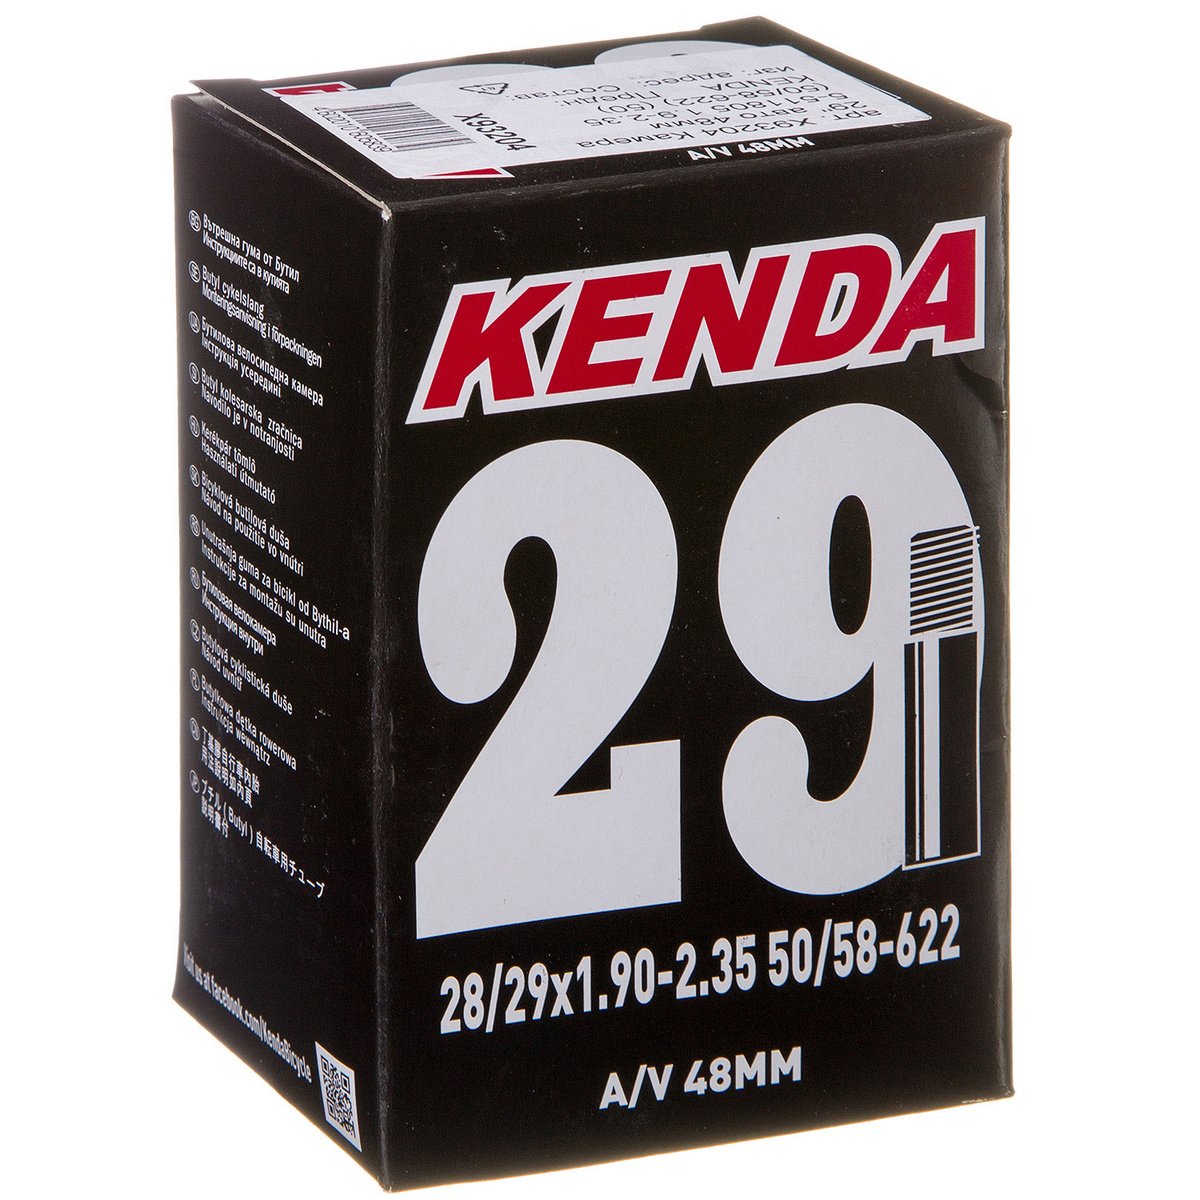 Камера для велосипеда KENDA 28-29, авто ниппель, 1.9-2.35 (50/58-622),  5-516329